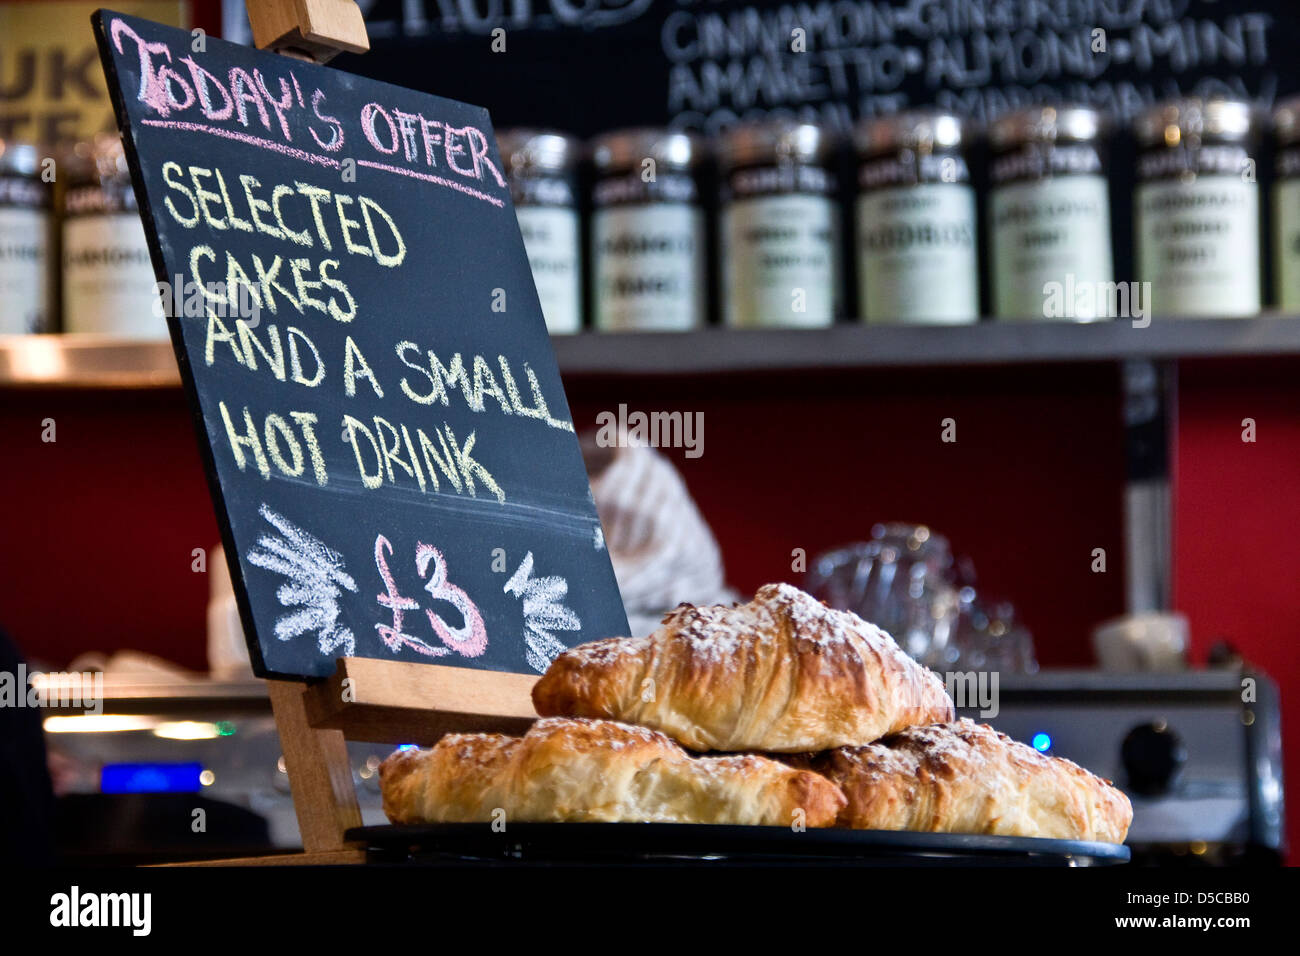 Certains gâteaux et une petite boisson chaude pour £3 est une offre spéciale affichée à l'intérieur d'un café à Dundee, Royaume-Uni Banque D'Images